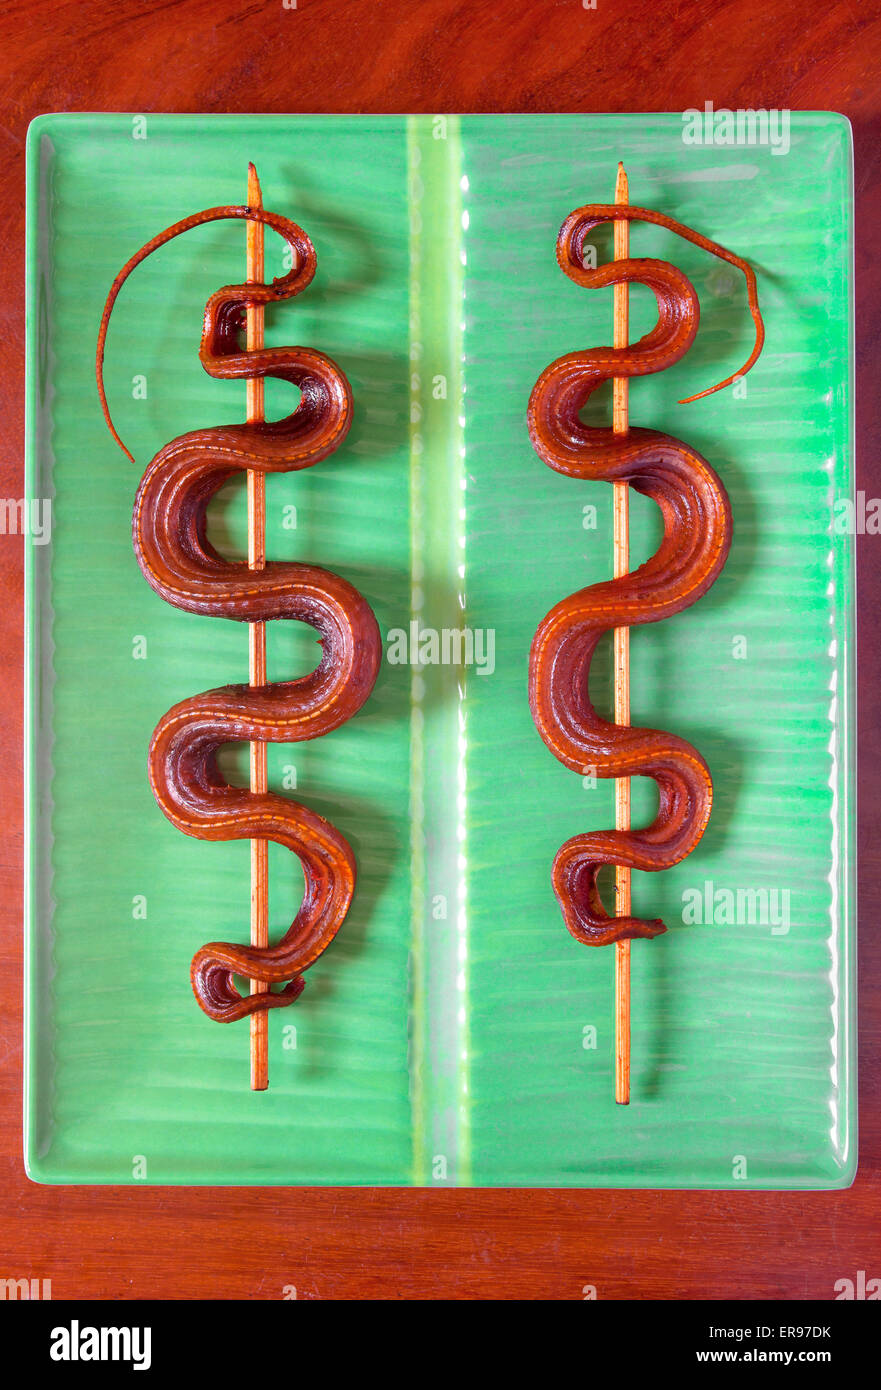 Gekochte Schlangenkebabs, wie sie auf Märkten in Kambodscha verkauft werden - ein Beispiel für die seltsamen oder seltsamen Speisen, die von Menschen auf der ganzen Welt gegessen werden Stockfoto